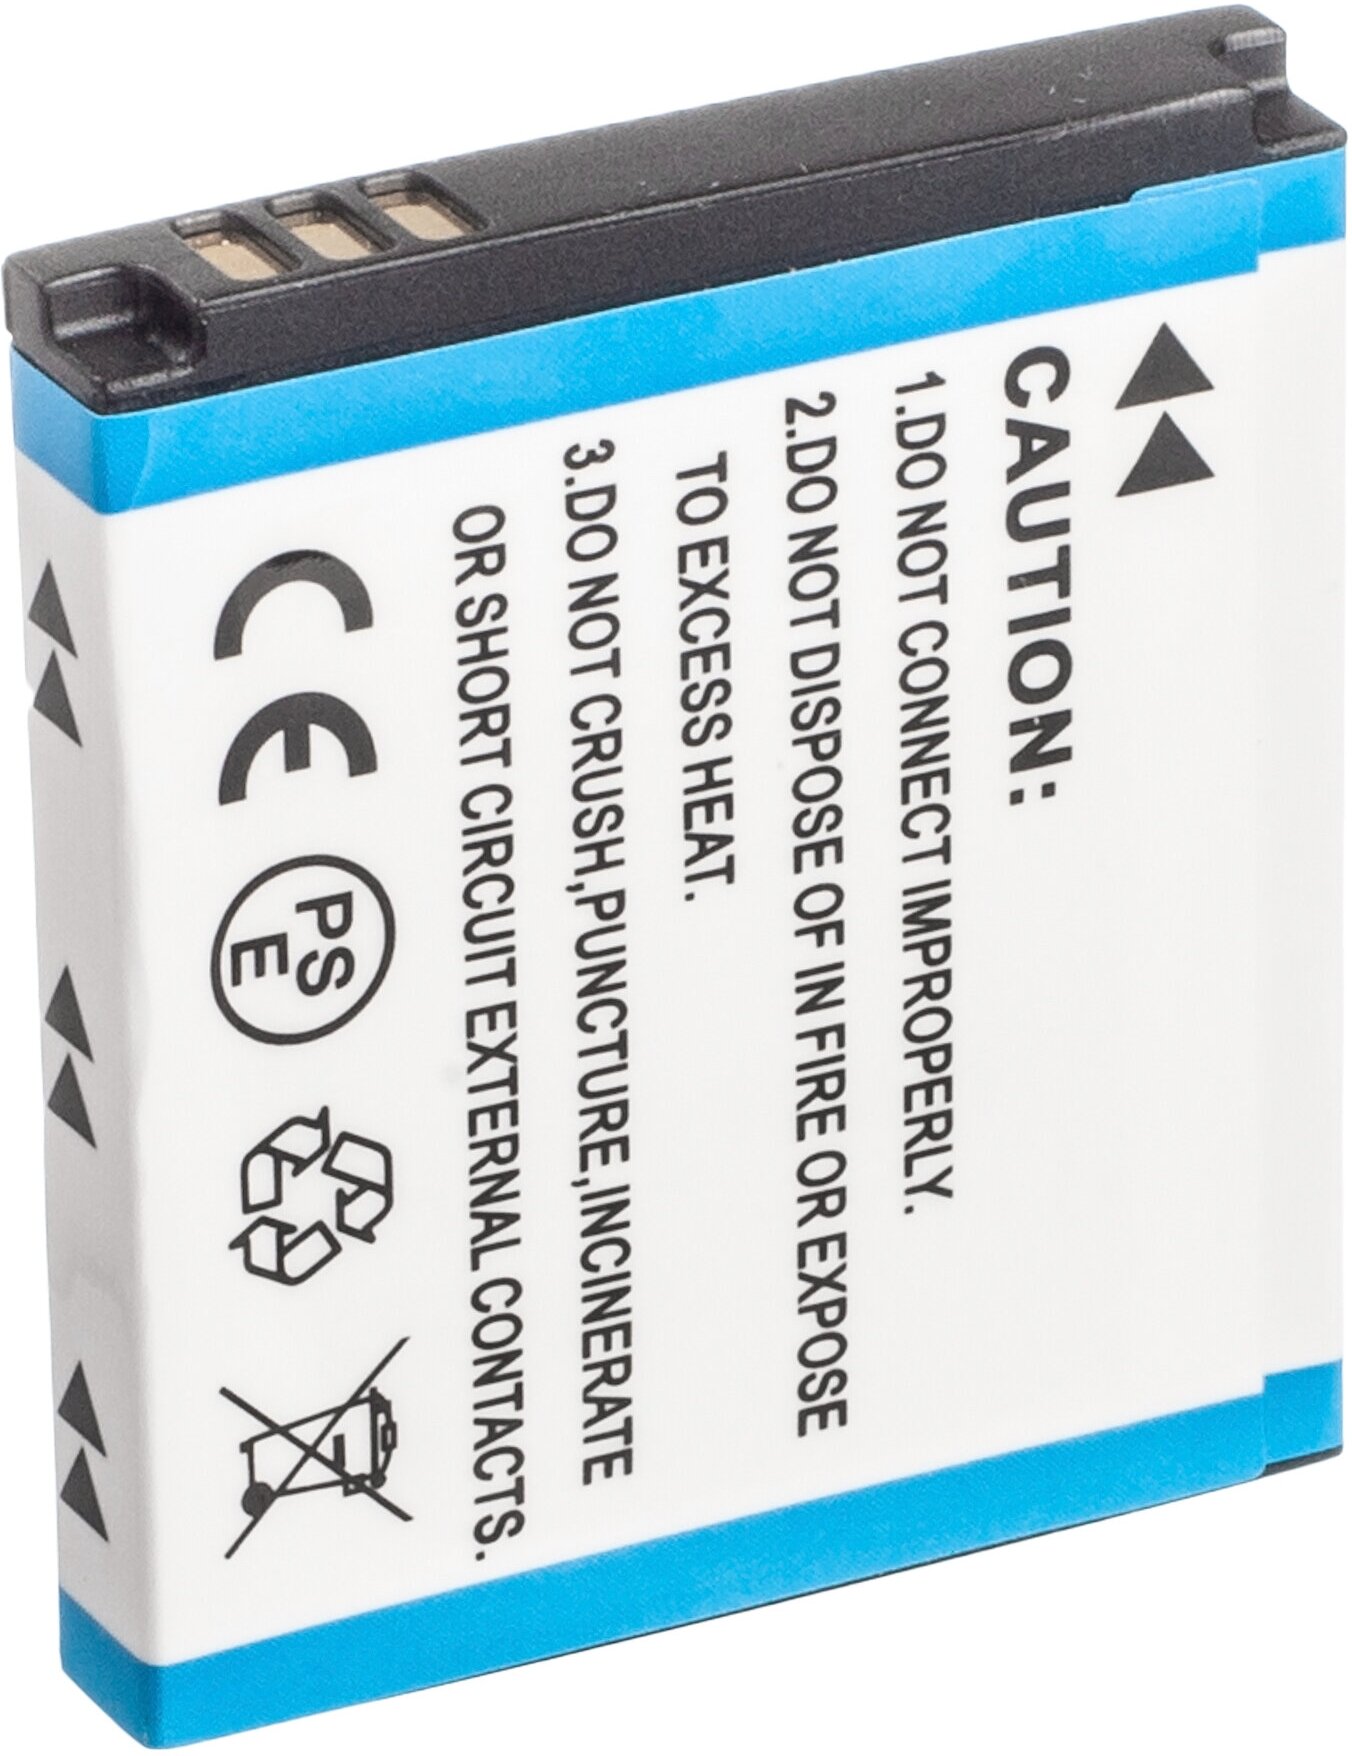 Аккумулятор SLB-0937 для Samsung Digimax i8 | L730 | NV4 | L830 | PL10 | CL5 - 900mAh